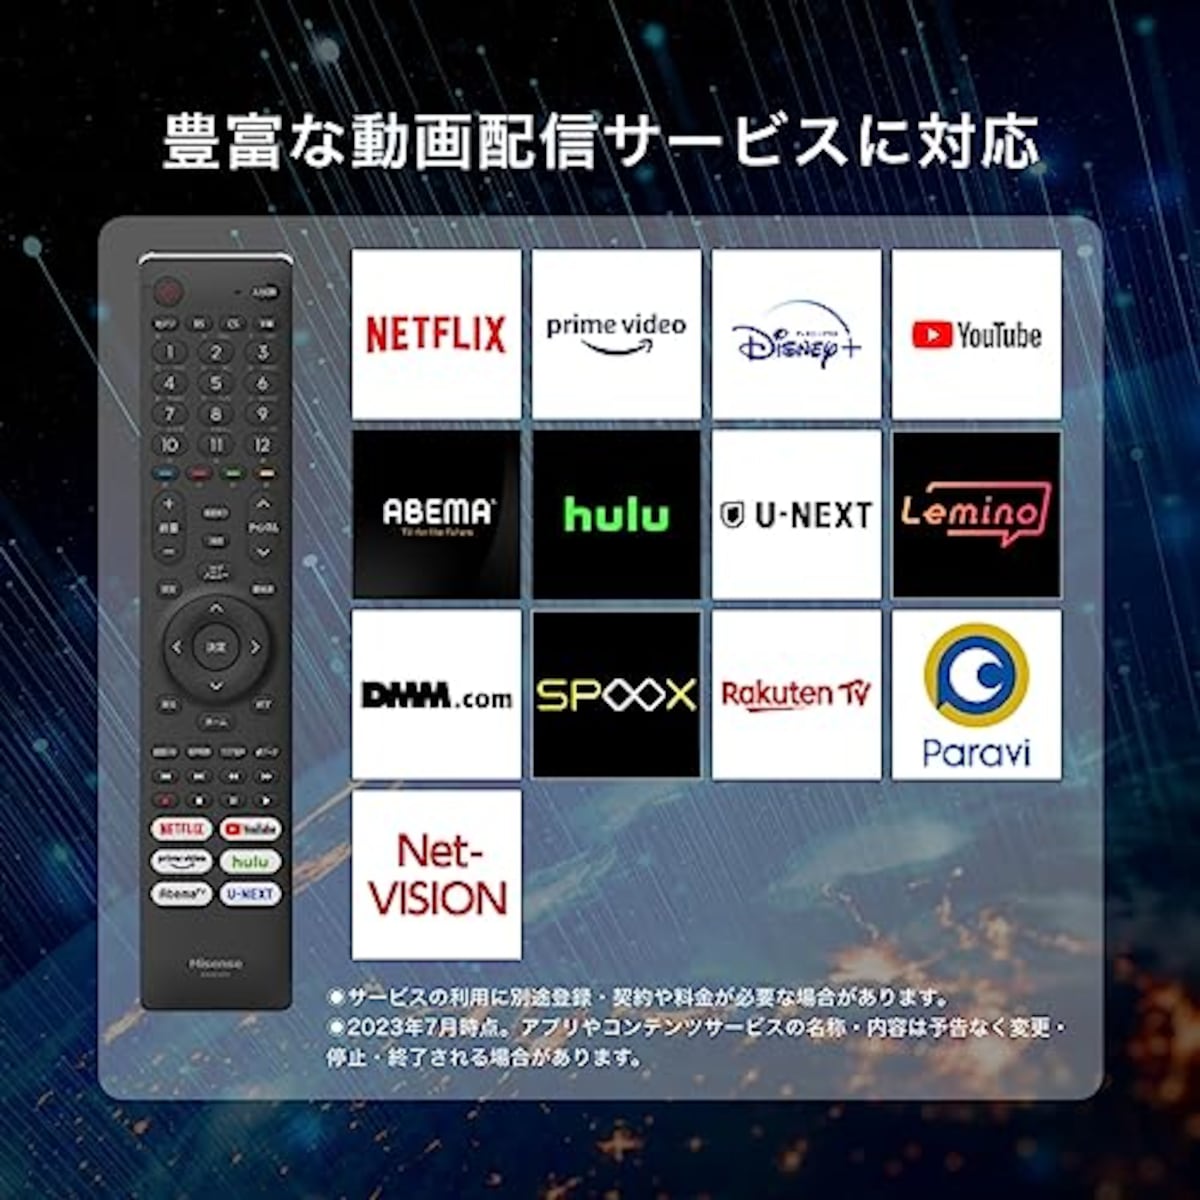  ハイセンス 40V型 フルハイビジョン 液晶 テレビ 40A40H ネット動画対応 VAパネル 3年保証 2022年モデル画像4 